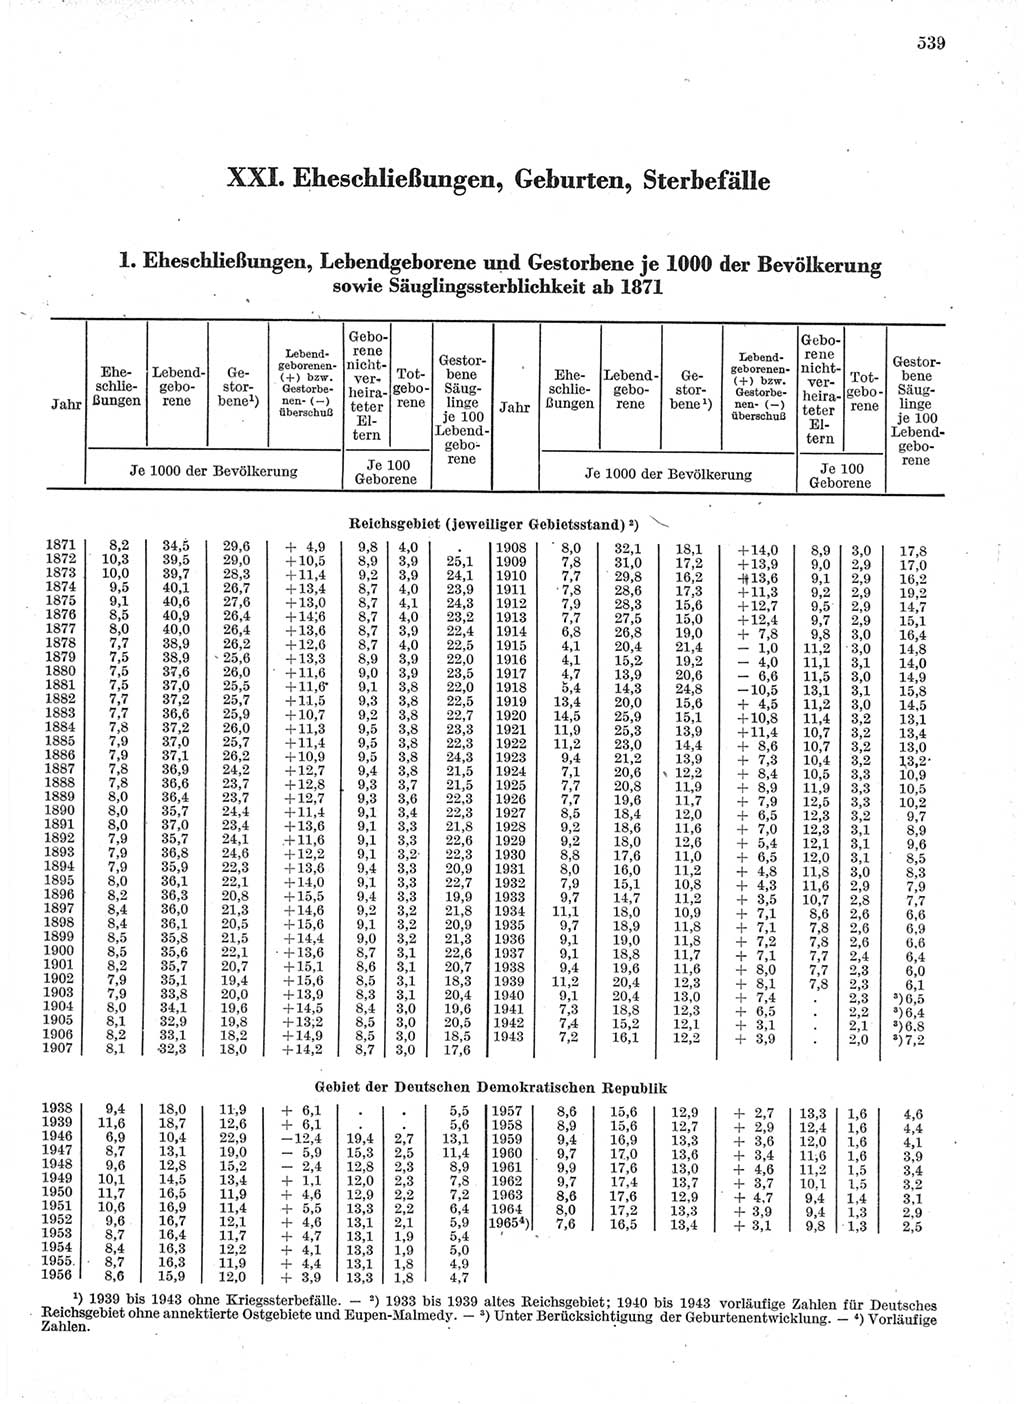 Statistisches Jahrbuch der Deutschen Demokratischen Republik (DDR) 1966, Seite 539 (Stat. Jb. DDR 1966, S. 539)